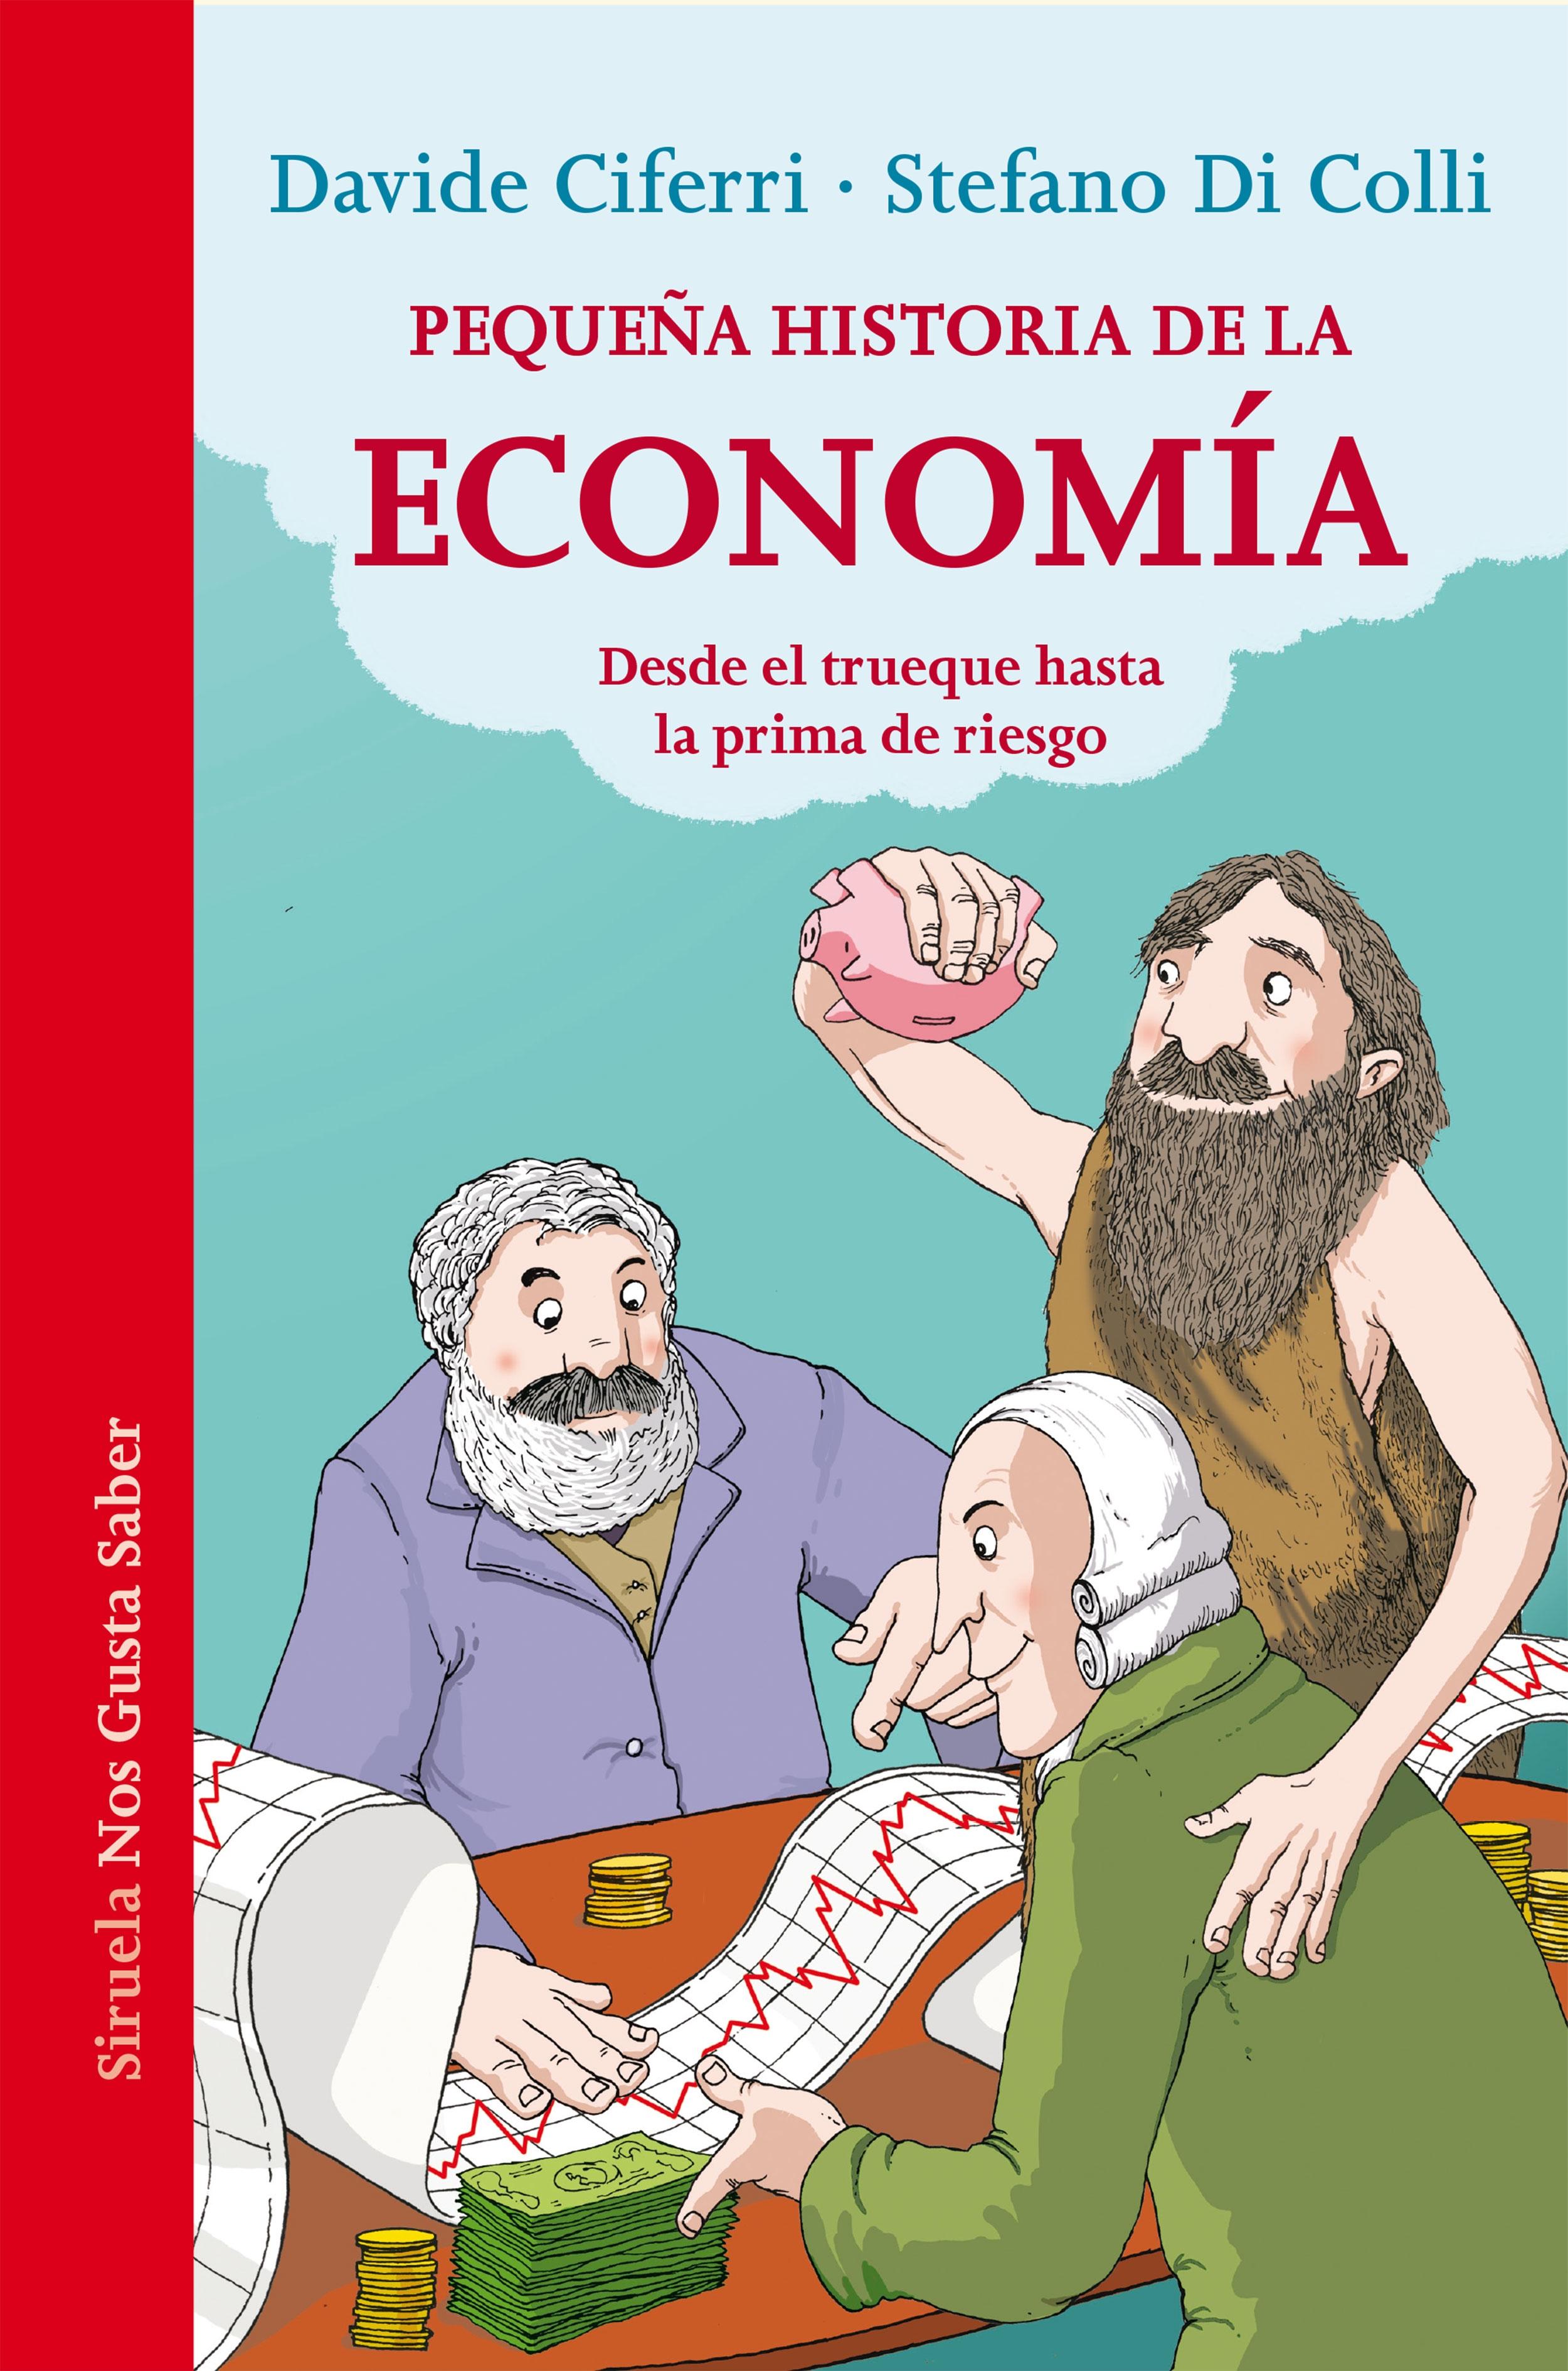 Pequeña historia de la economía "Desde el trueque hasta la prima de riesgo". 